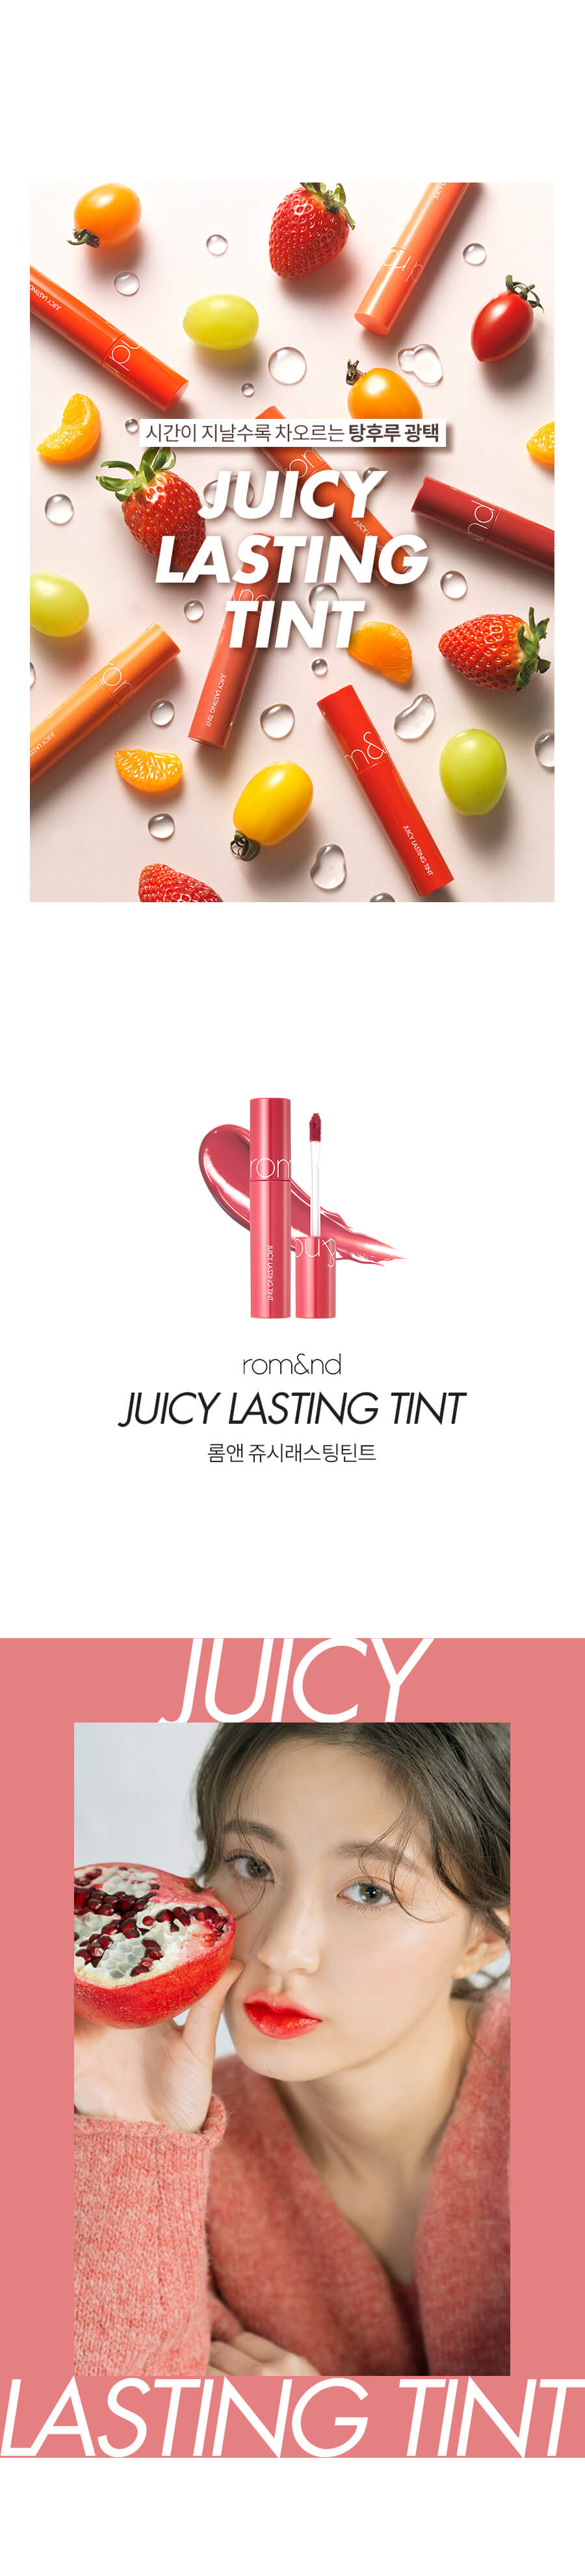 rom&nd, ลิป rom&nd, rom&nd Juicy Lasting Tint, rom&nd Juicy Lasting Tint รีวิว, rom&nd Juicy Lasting Tint ราคา, rom&nd Juicy Lasting Tint สีไหนสวย, rom&nd Juicy Lasting Tint 5.5 g. #06 ทินท์เนื้อชุ่มฉ่ำ ให้ความฉ่ำวาวสุดๆ เนื้อทินท์ทาง่าย และเนียนเรียบ เกลี่ยง่าย ให้สีสันสดใสและสม่ำเสมอ, rom&nd Juicy Lasting Tint 5.5 g. #07